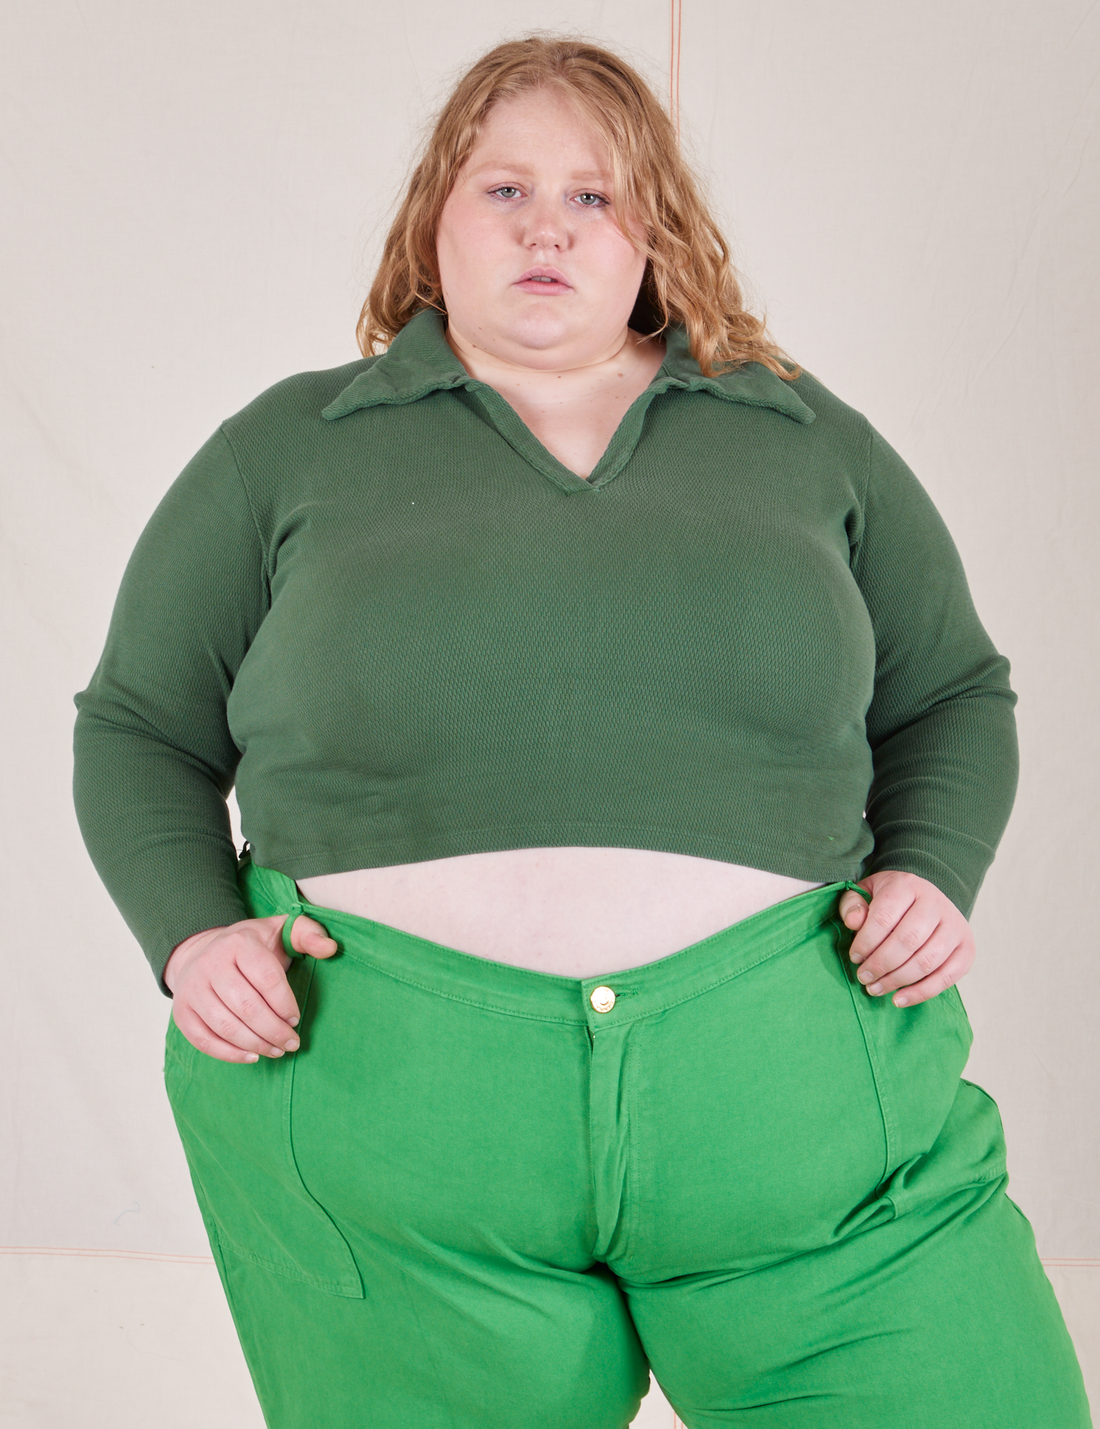 Catie is wearing size 3XL Long Sleeve Fisherman Polo in Dark Emerald Green